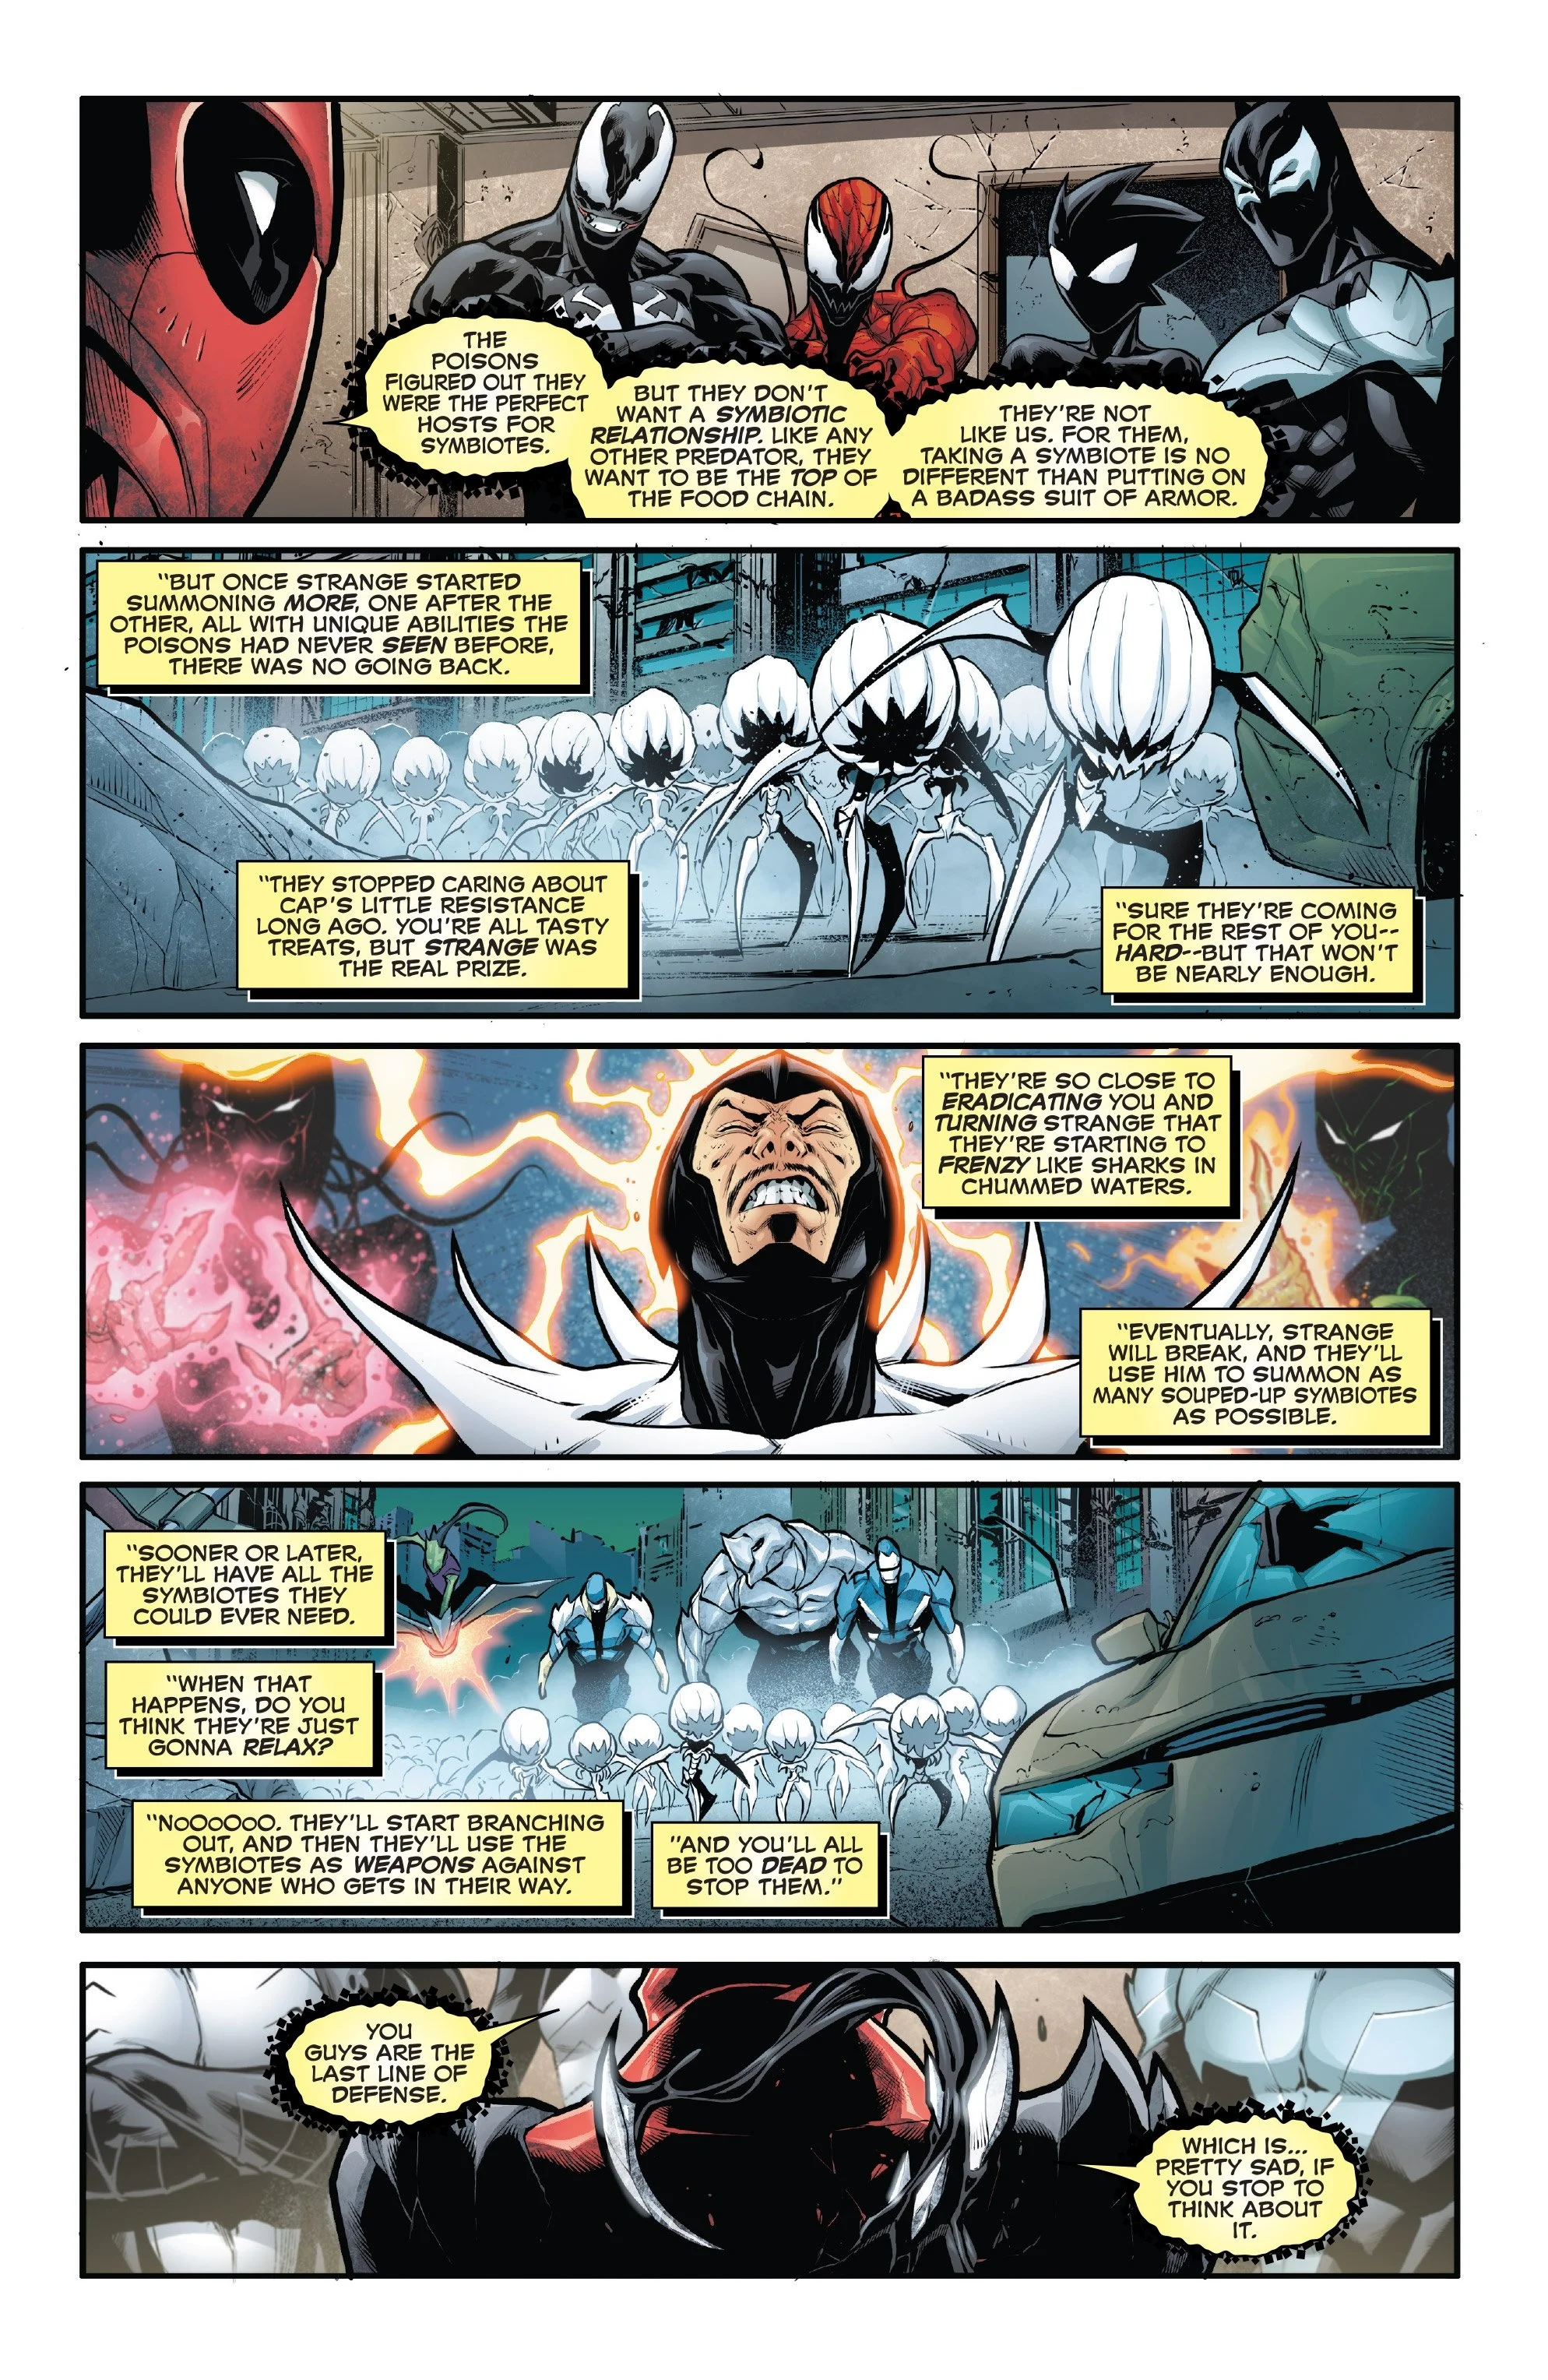 Venomverse: теперь мы больше знаем о загадочной расе Пойзонов, с которыми воюют симбиоты - фото 2